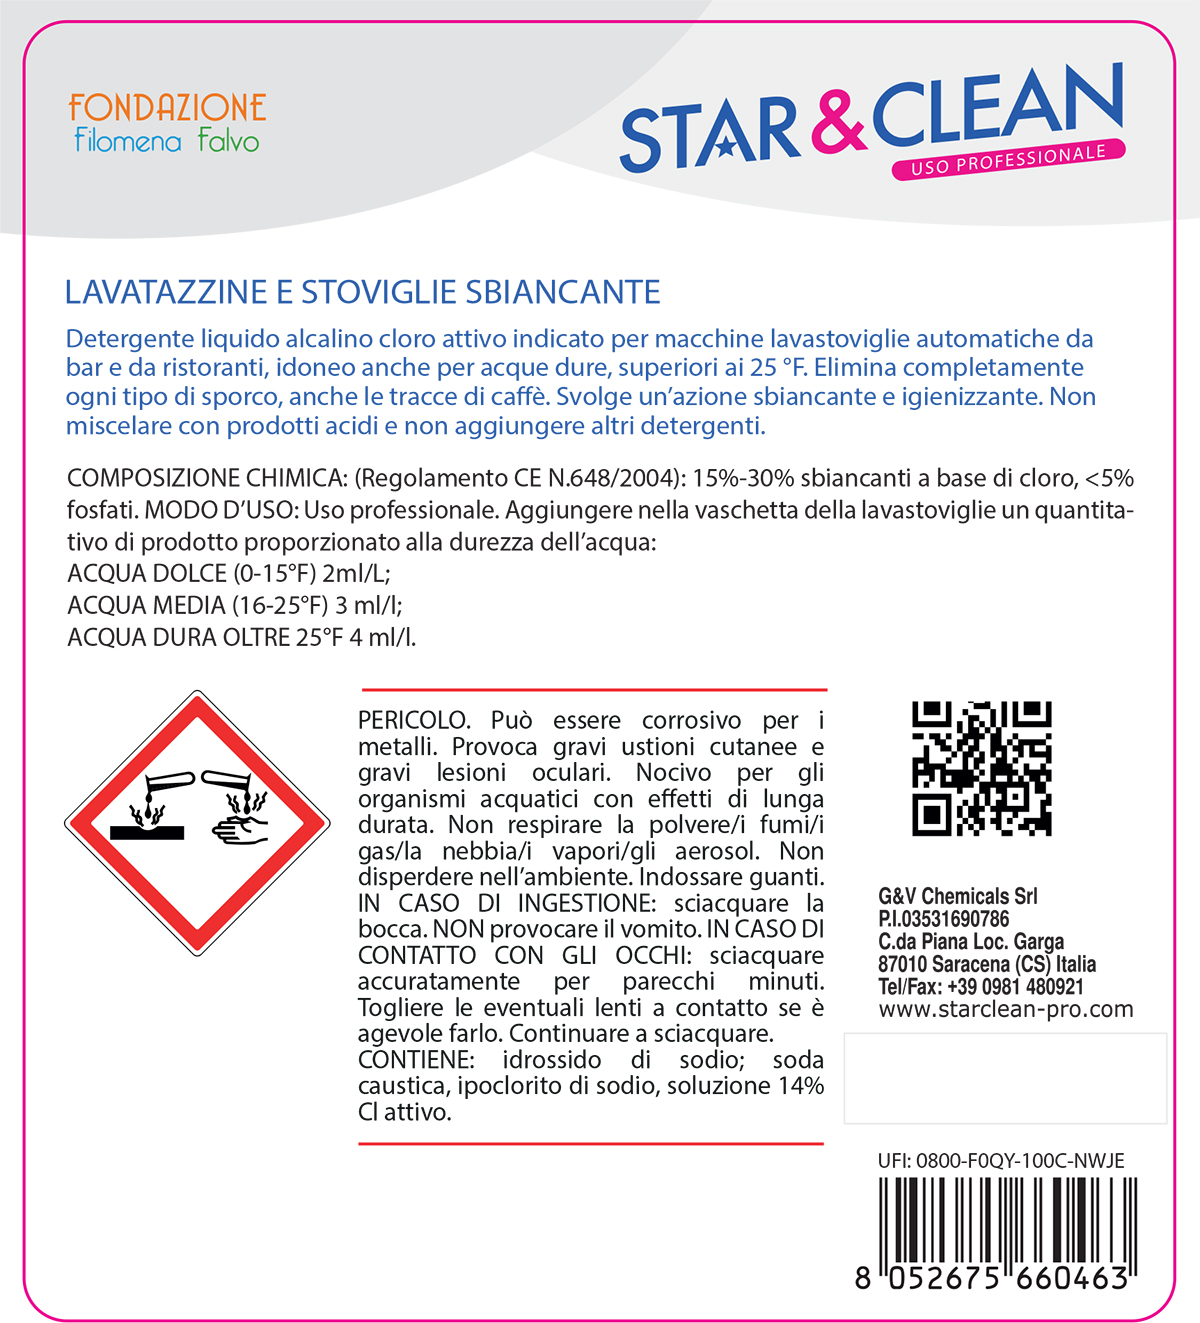 STAR CLEAN 129 - LAVATAZZINE E STOVIGLIE SBIANCANTE